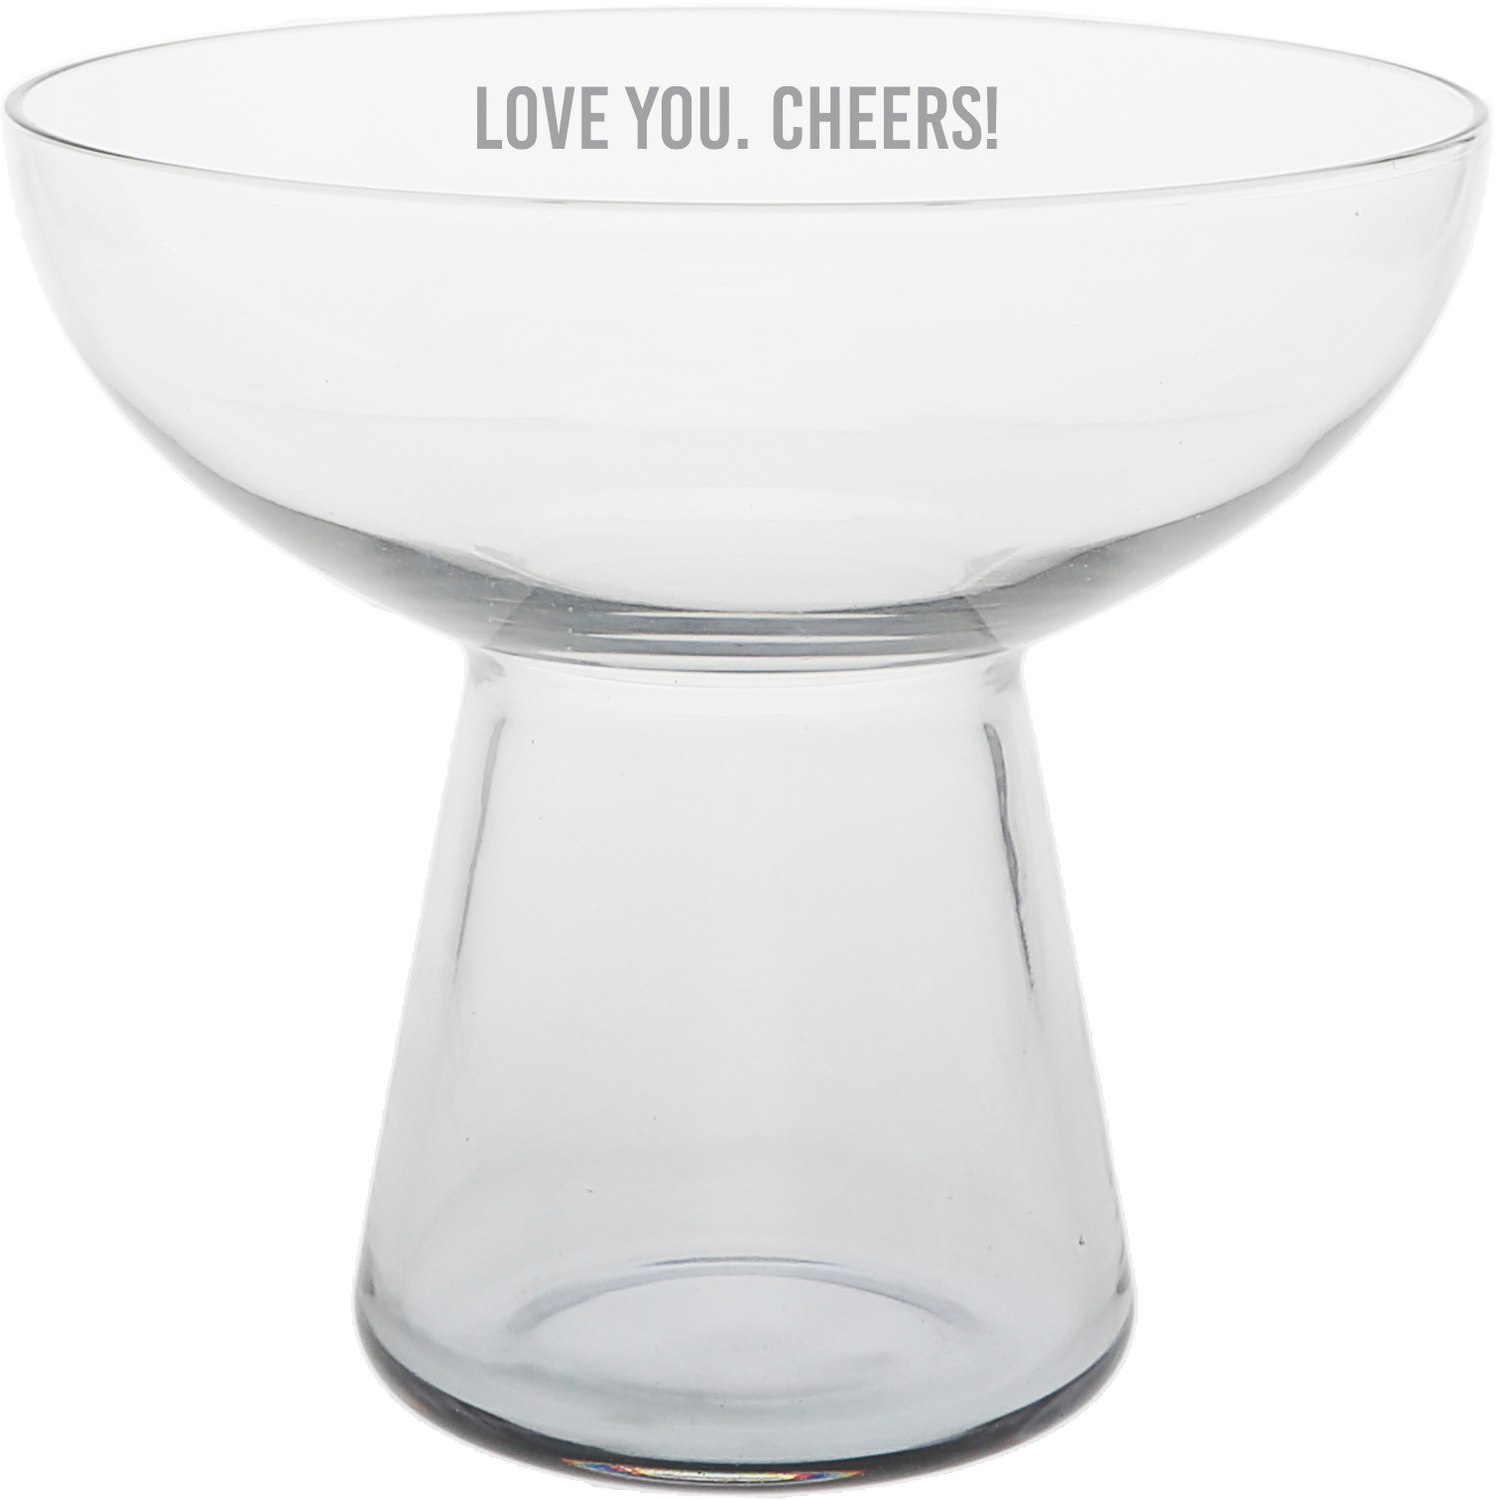 Love You. Cheers! by Love You - Love You. Cheers! - 15 oz Cocktail Glass